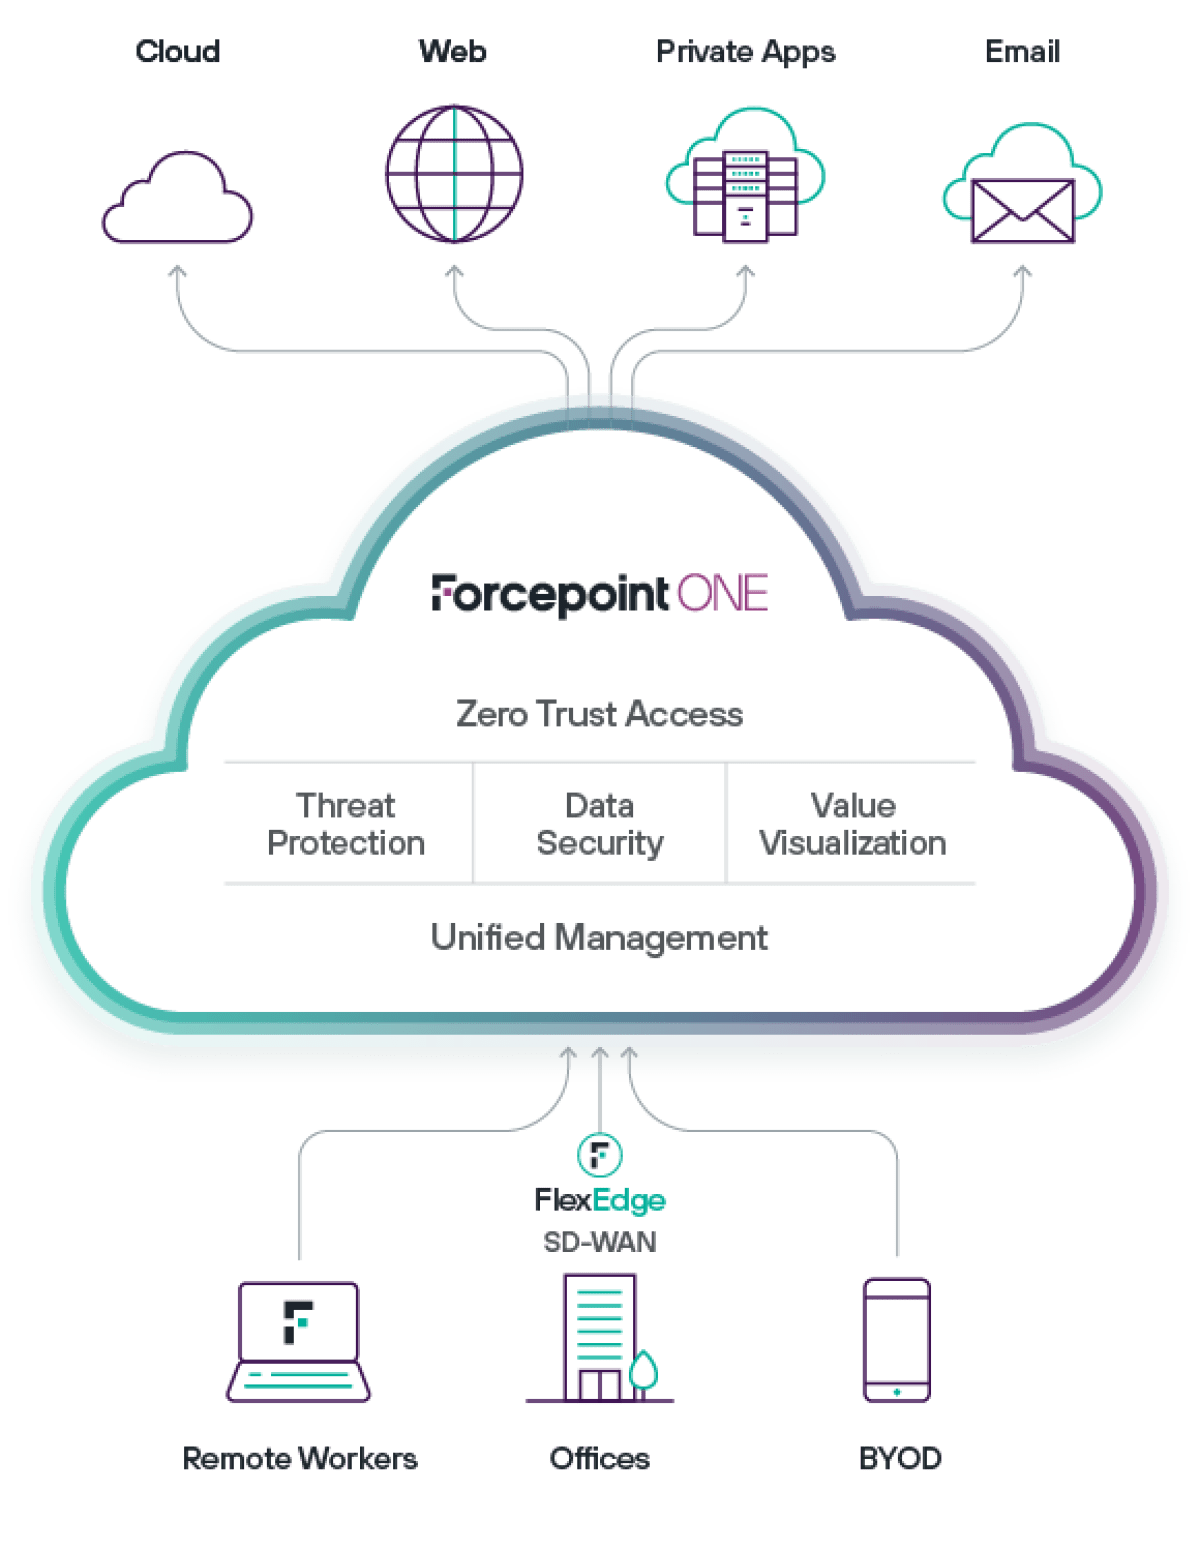 Forcepoint ONEは、統合型コンソールからSecurity Service Edge（SSE）を提供するクラウドネイティブ型のプラットフォームです。